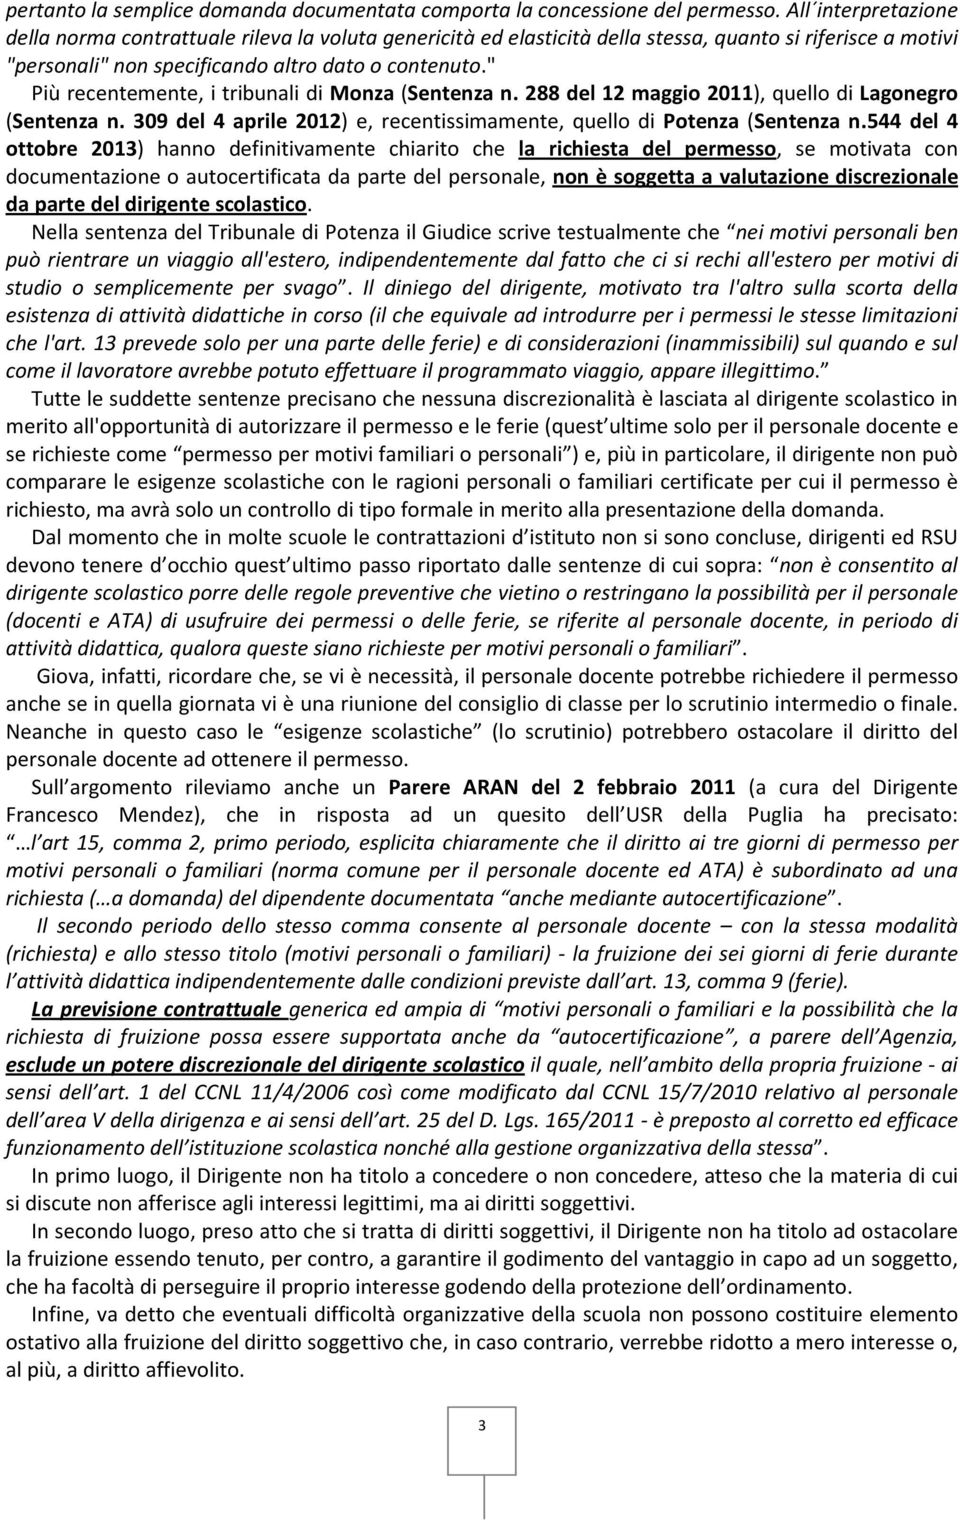 " Più recentemente, i tribunali di Monza (Sentenza n. 288 del 12 maggio 2011), quello di Lagonegro (Sentenza n. 309 del 4 aprile 2012) e, recentissimamente, quello di Potenza (Sentenza n.